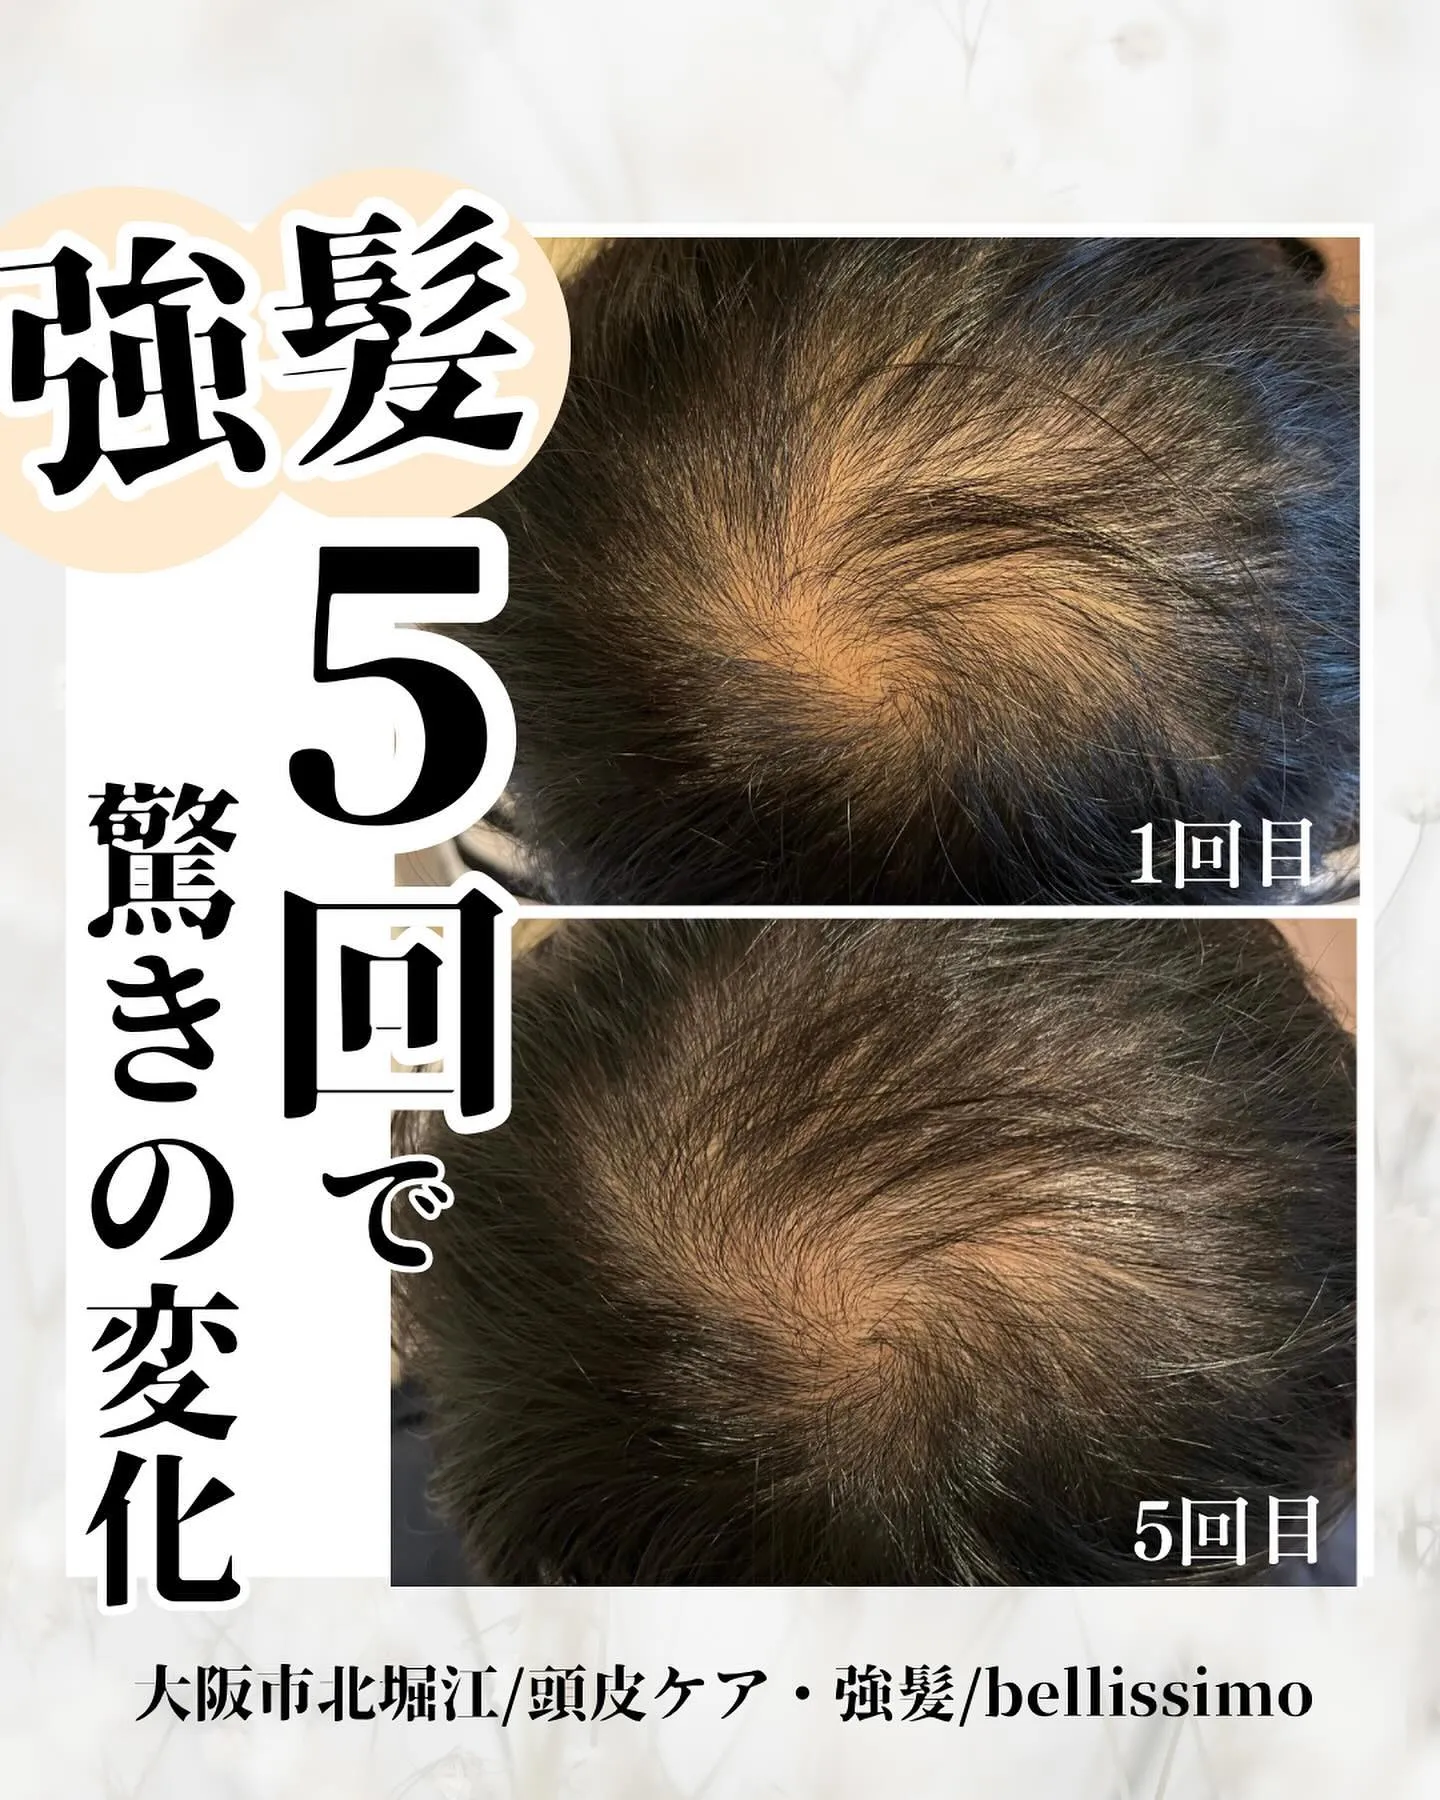 大阪市西区で薄毛改善、強髪を取り入れているエステサロン